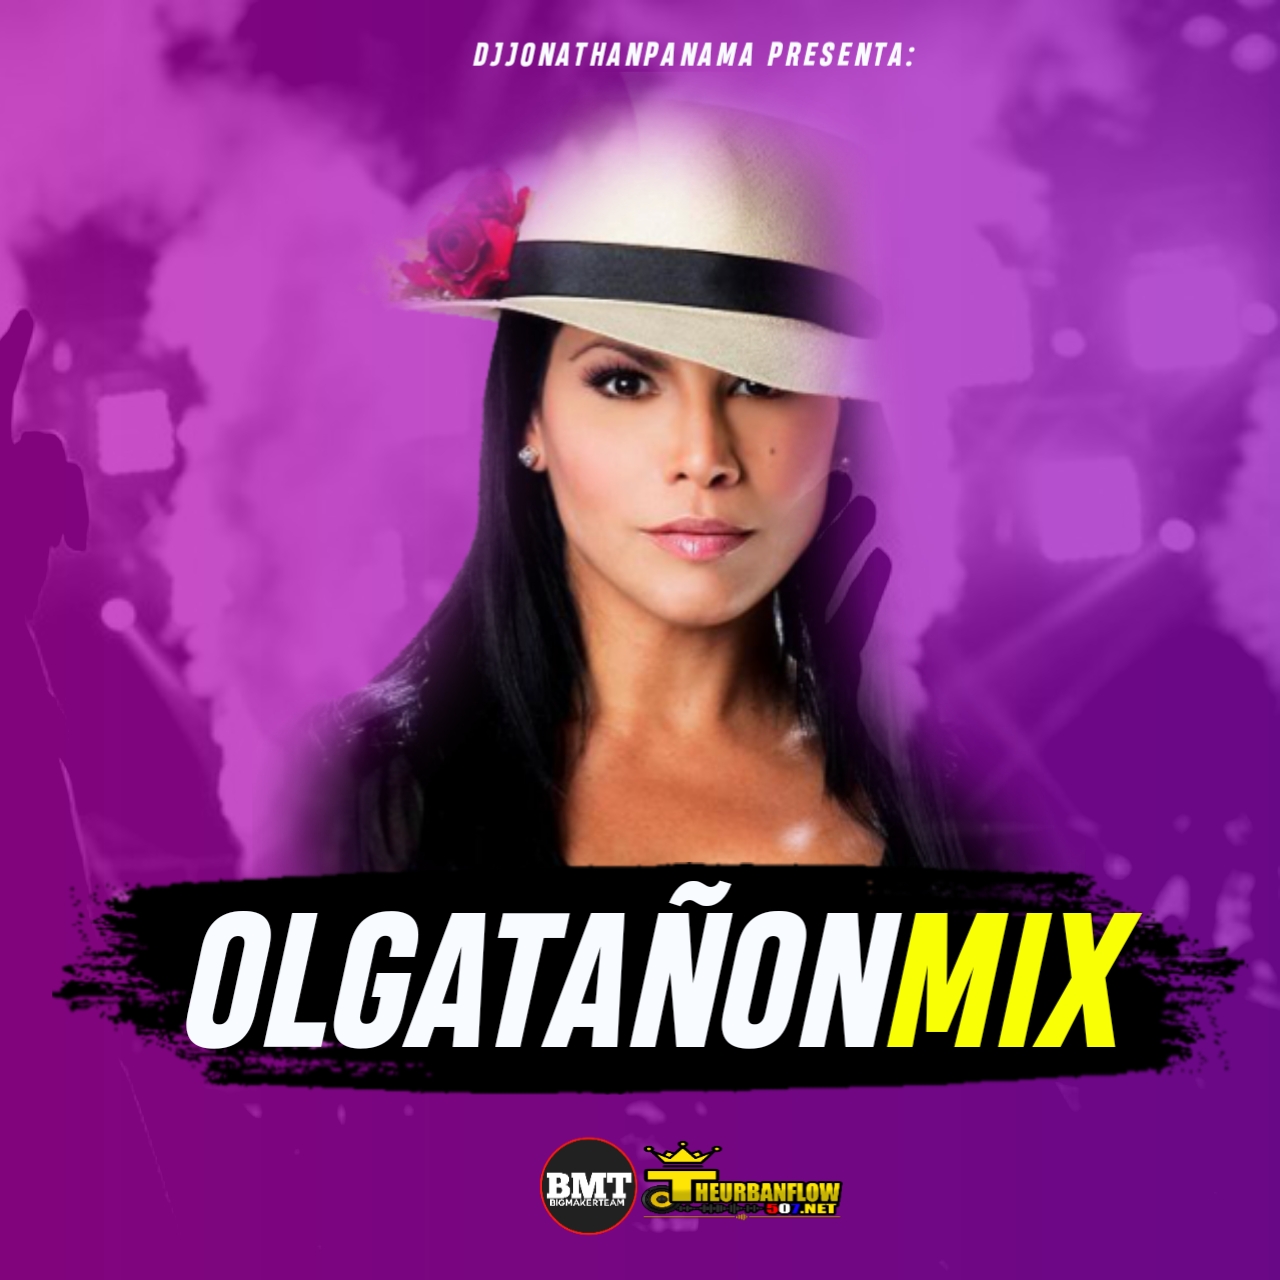 Olga Tañon Mix 2020 - @DjjonathanPanama